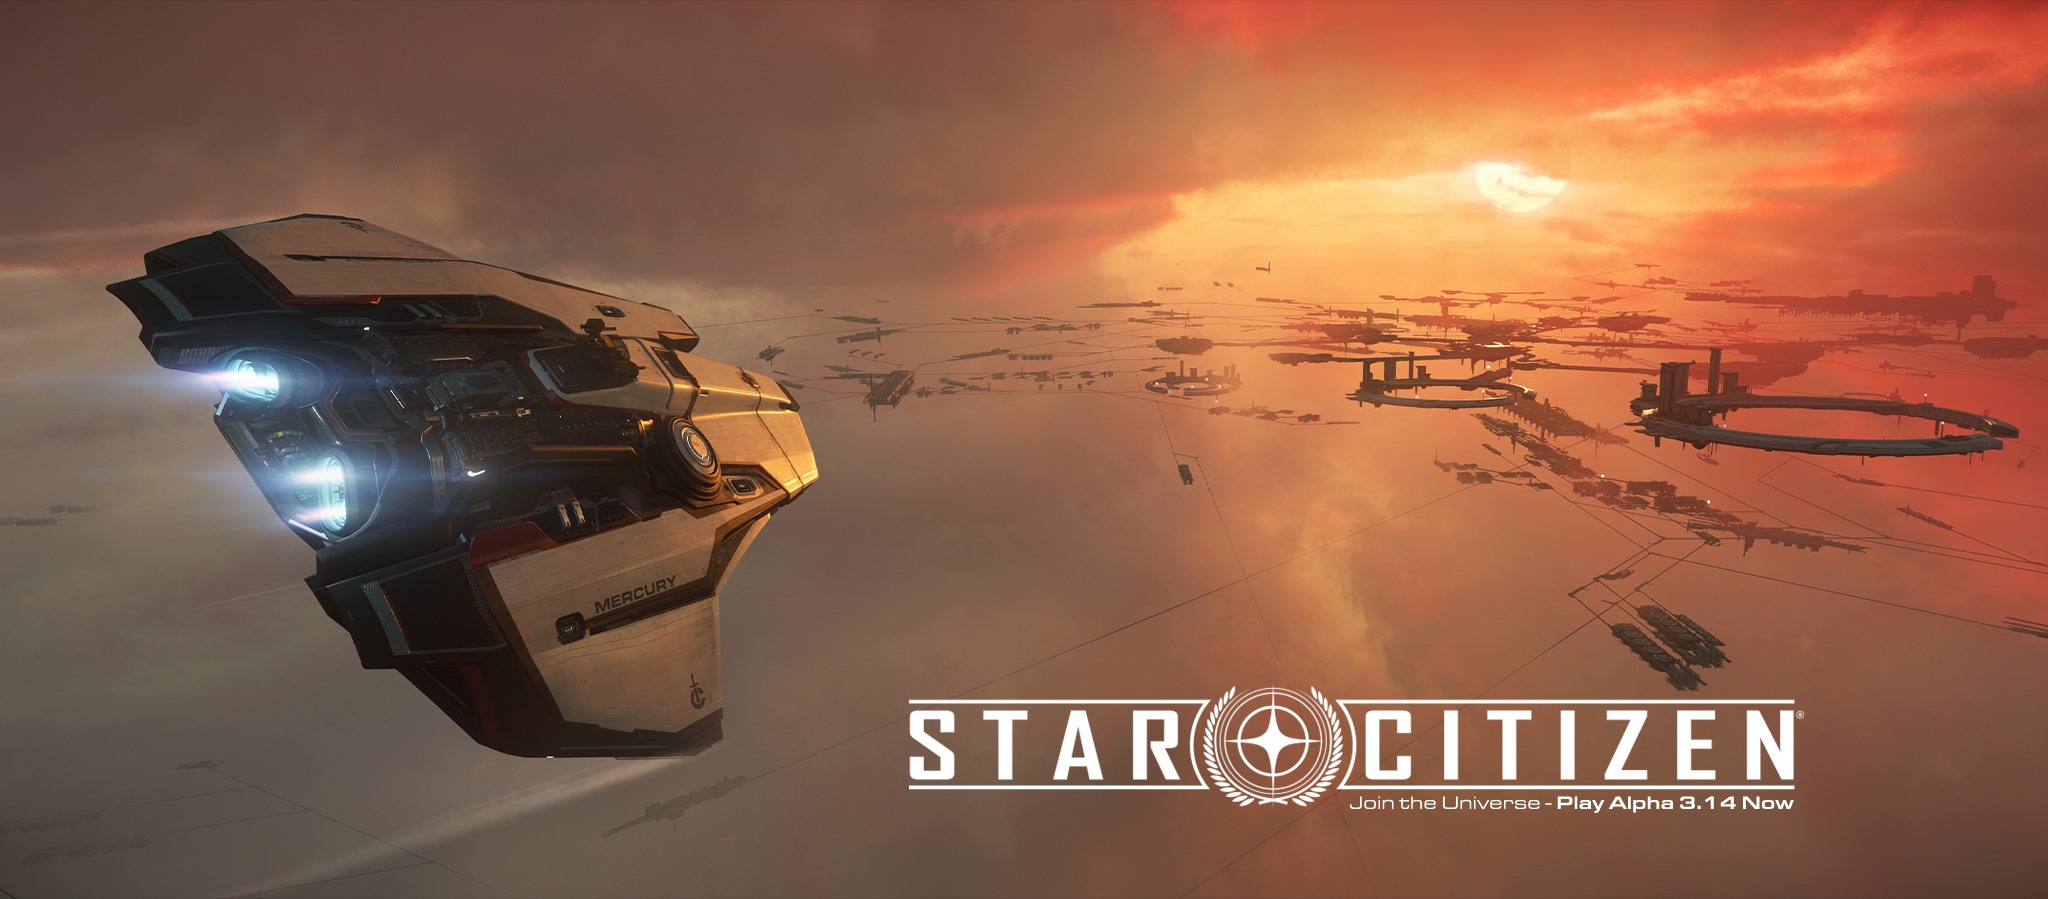 Das teuerste Spiel der Welt, Star Citizen, wird vorübergehend kostenlos sein